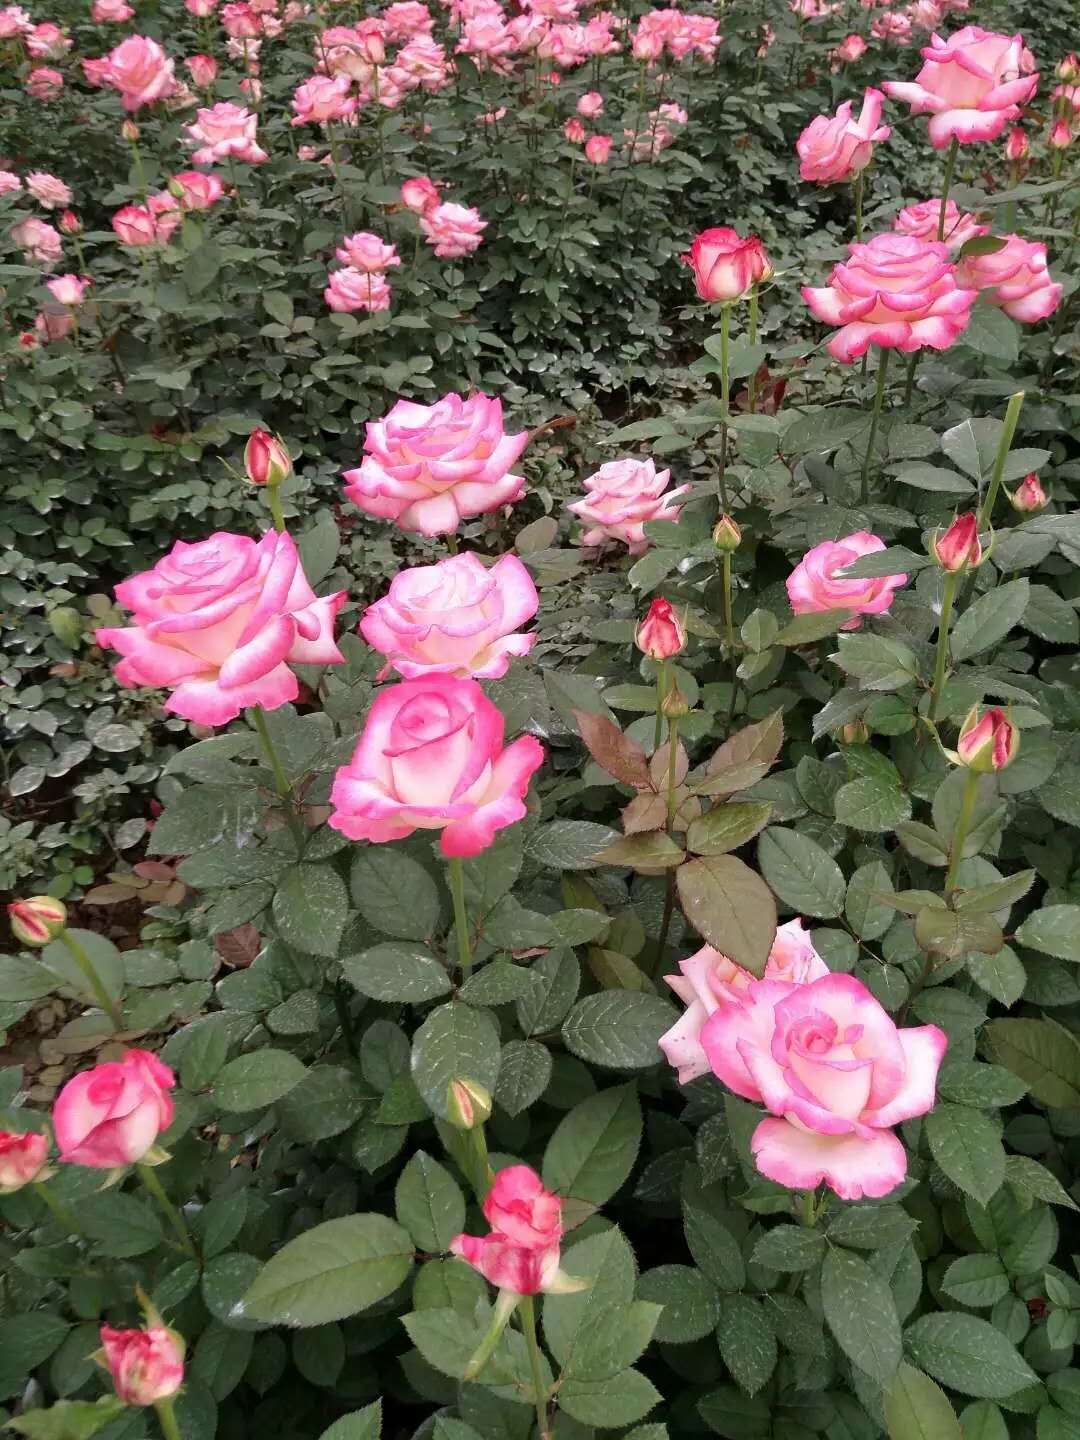 高原红玫瑰花厂家 高原红玫瑰花哪家好 云南高原红玫瑰花